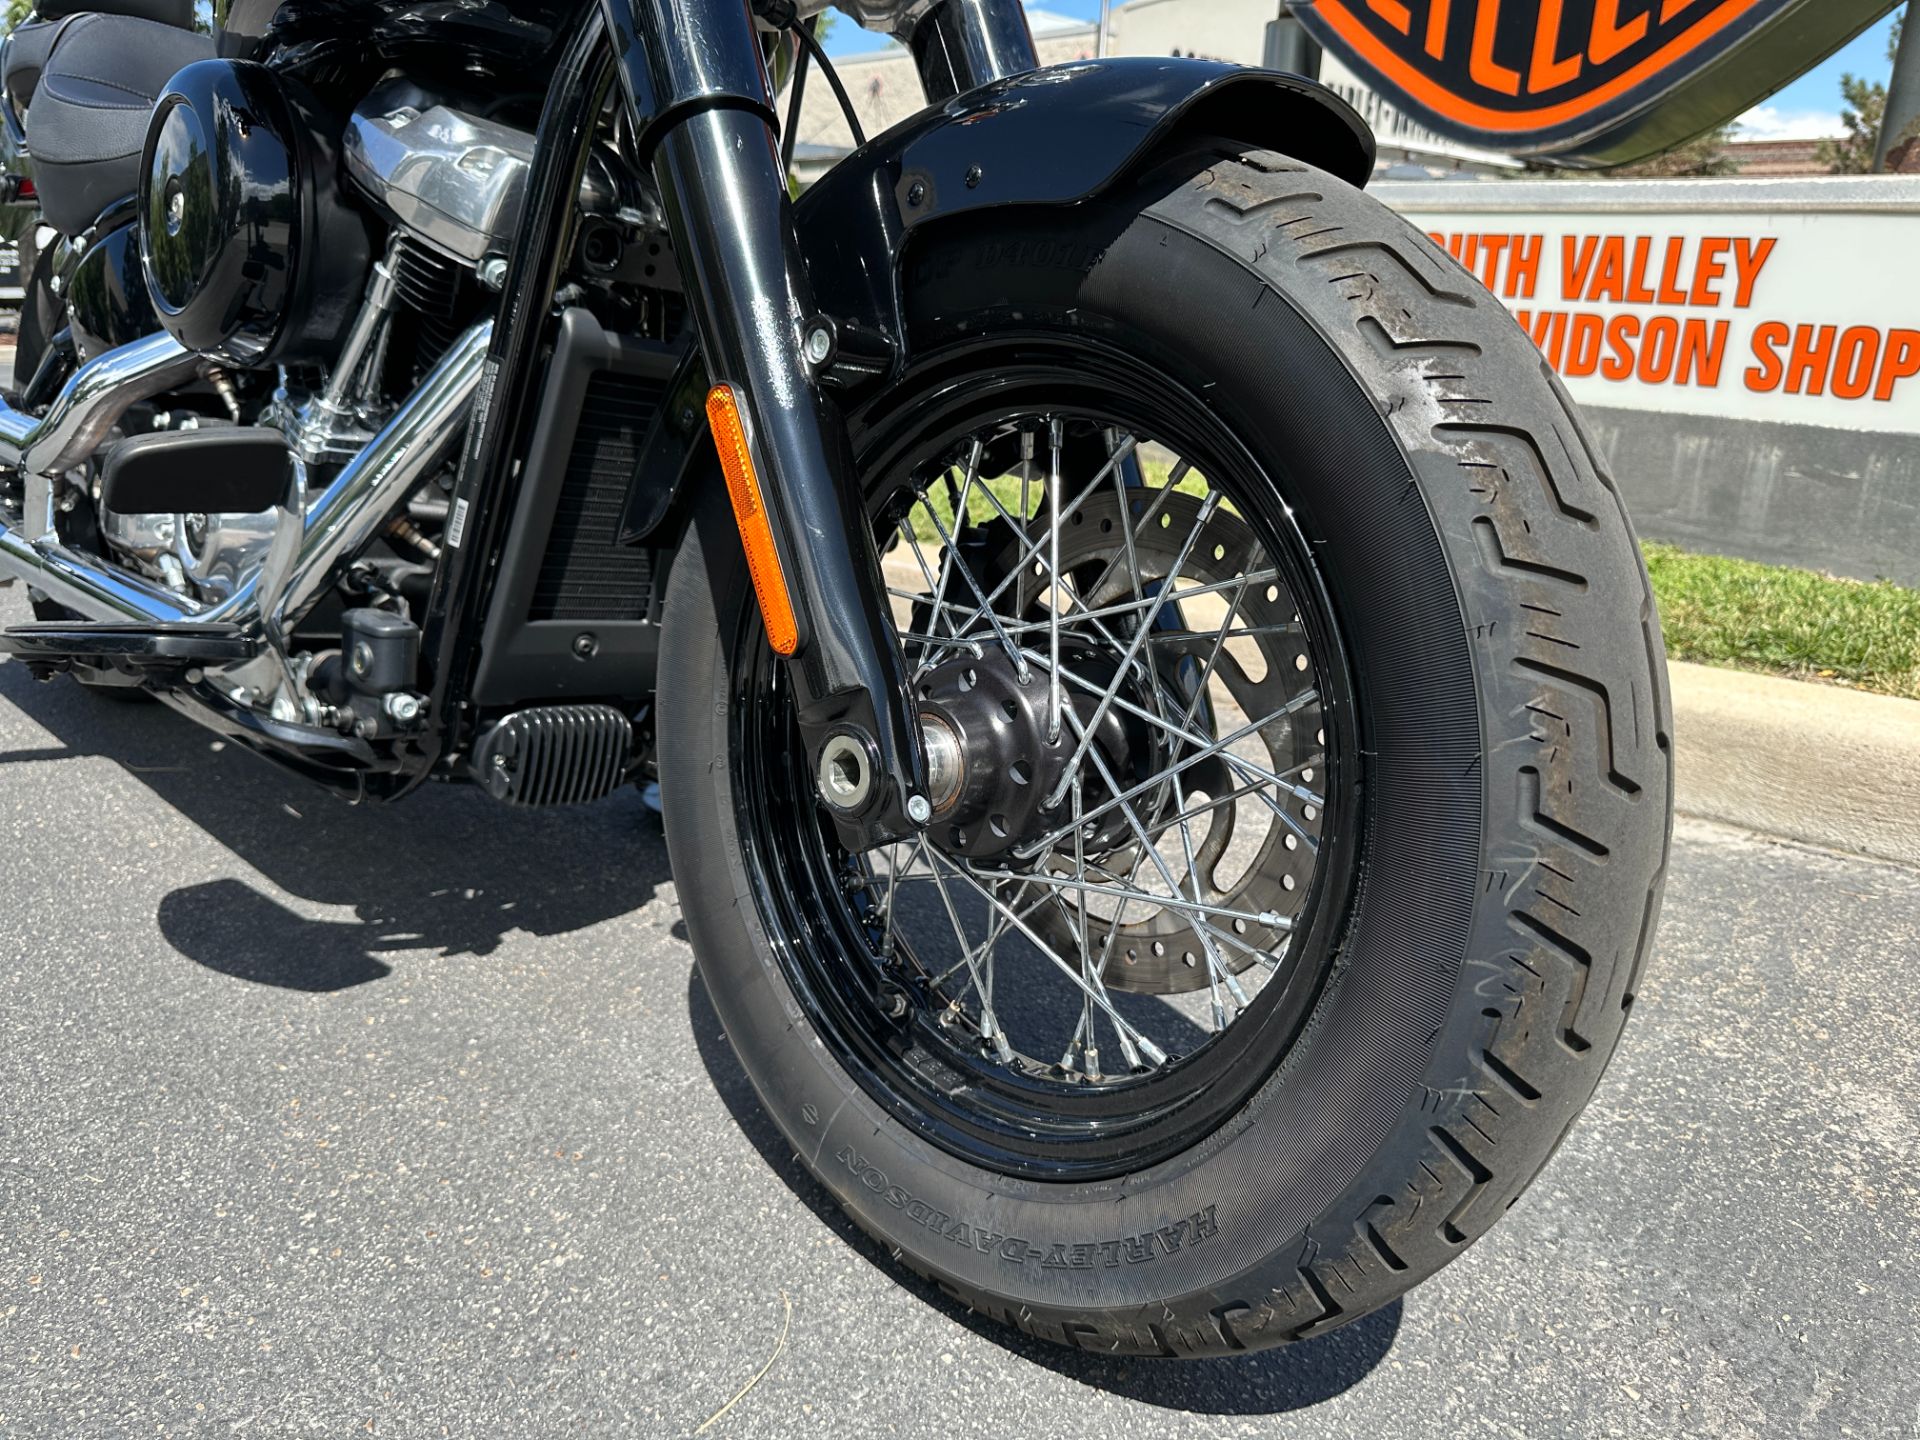 2021 Harley-Davidson Softail Slim® in Sandy, Utah - Photo 6